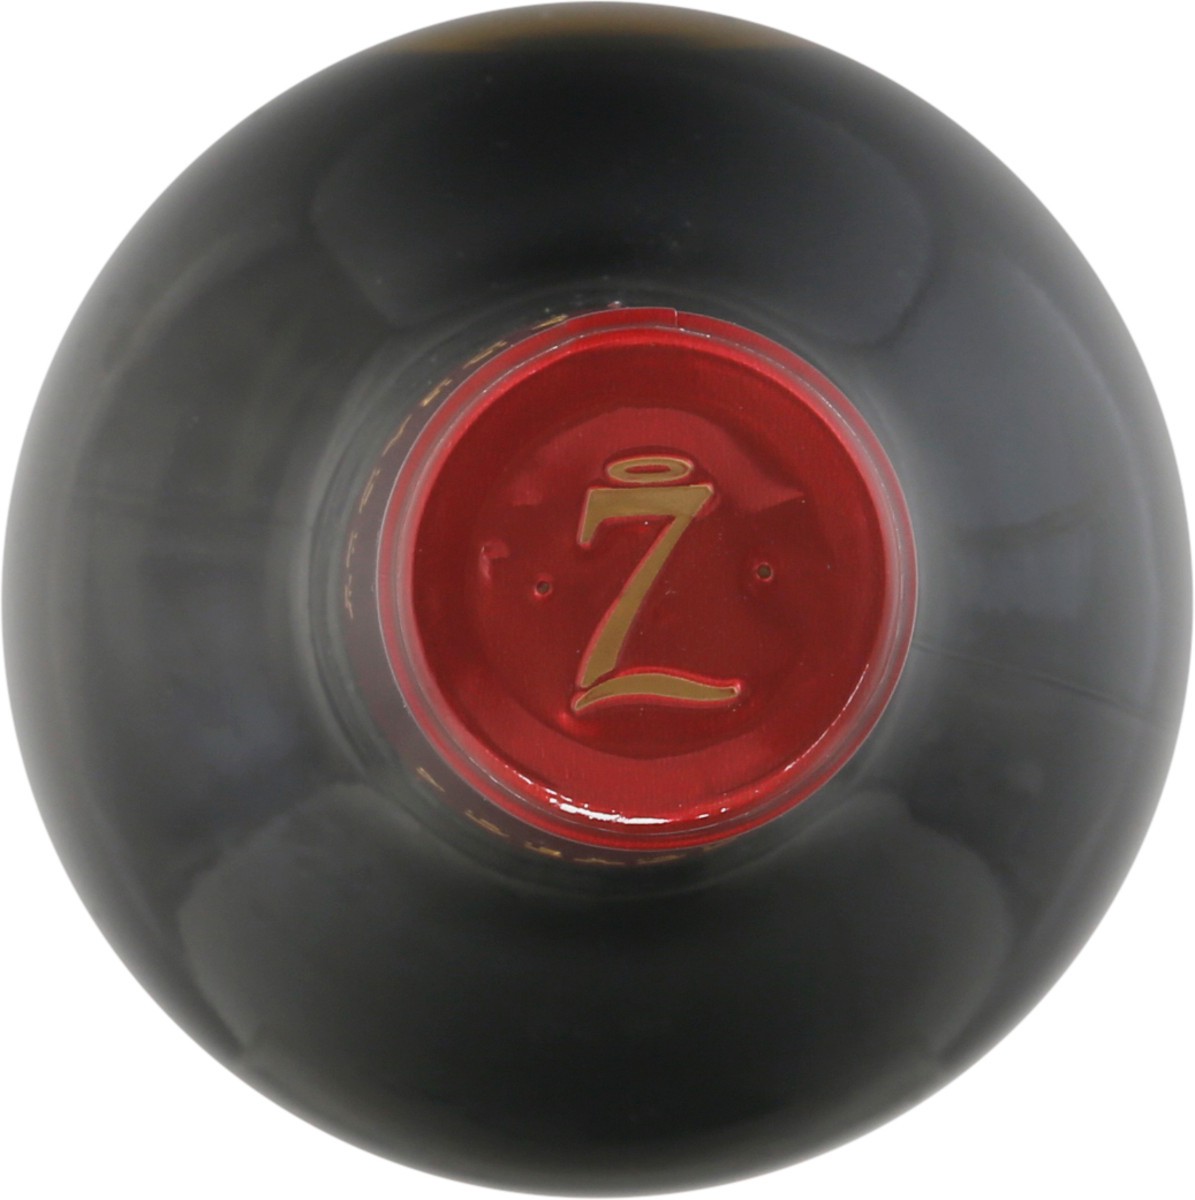 slide 11 of 11, 7 Deadly Zins Zins Zinfandel Red Wine – 750ml, 2017 California, 750 ml